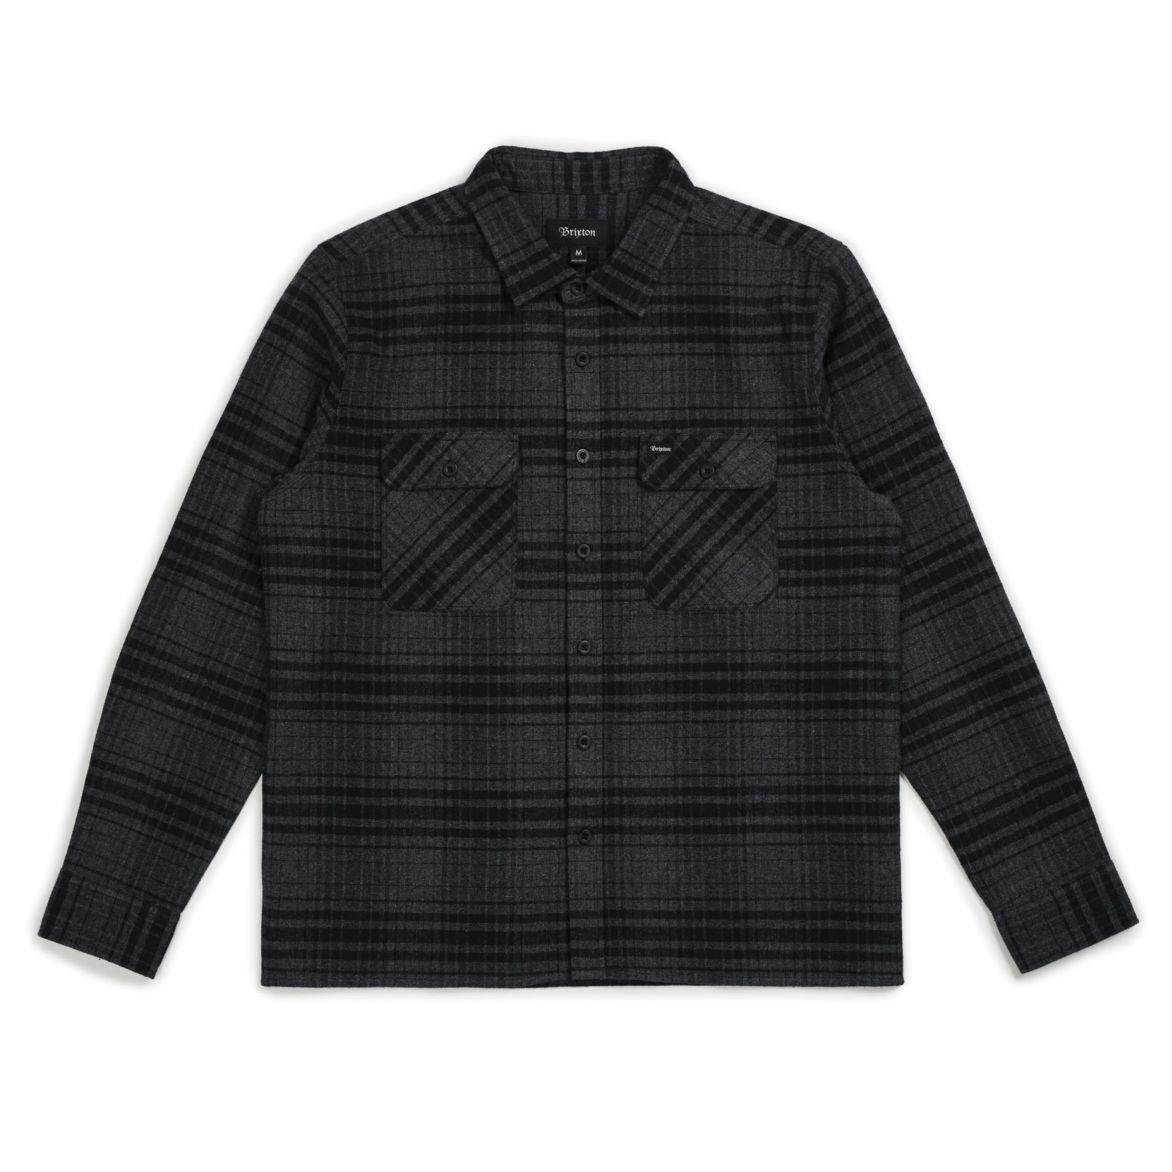 Brixton - Archie Men's L/S Flannel Shirt, Black/Heather Charcoal